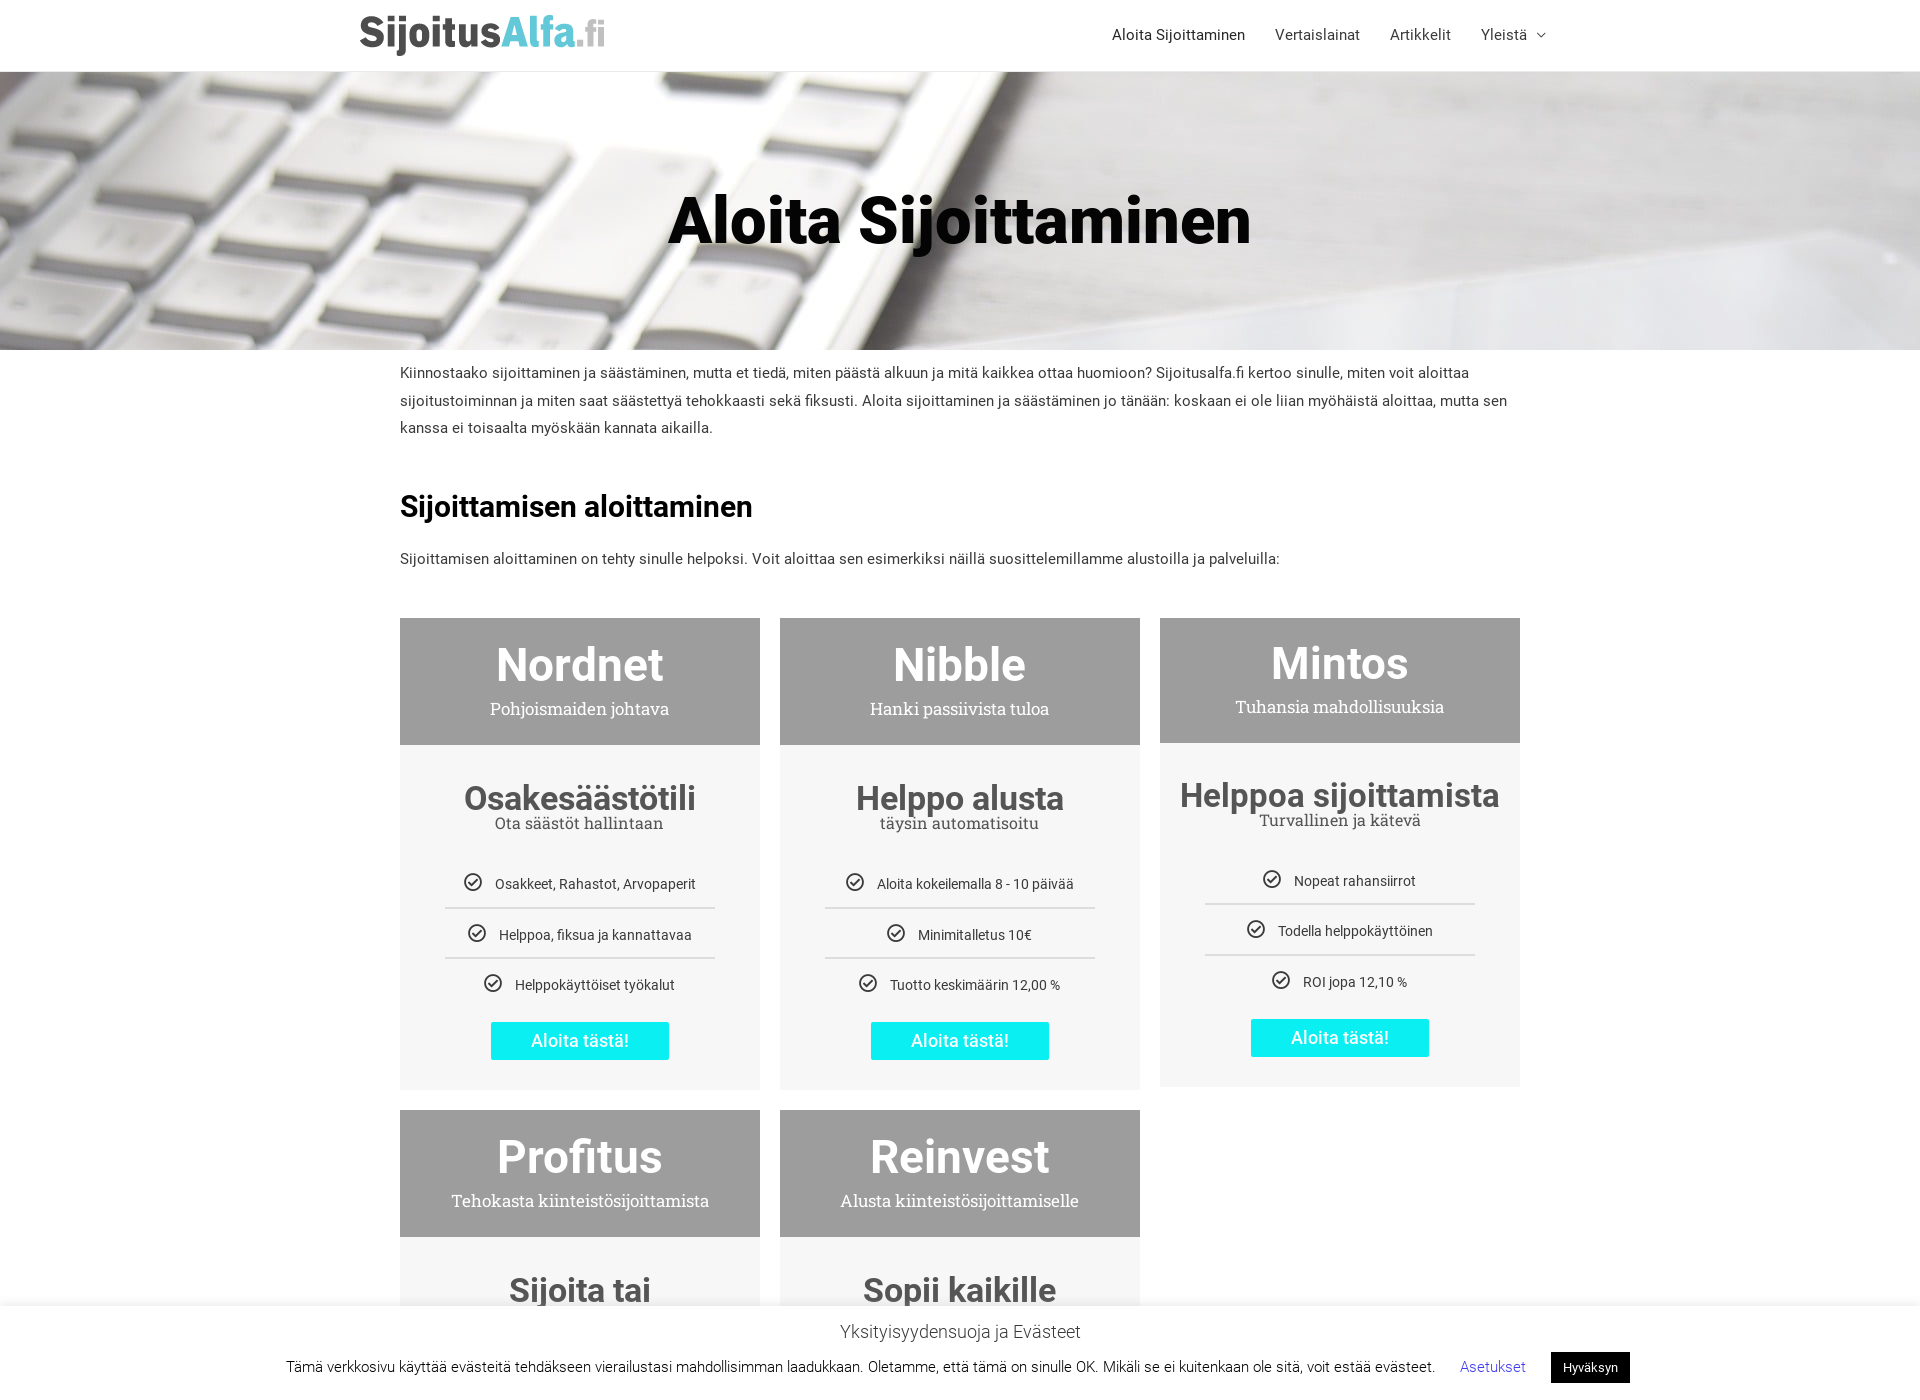 Skärmdump för sijoitusalfa.fi